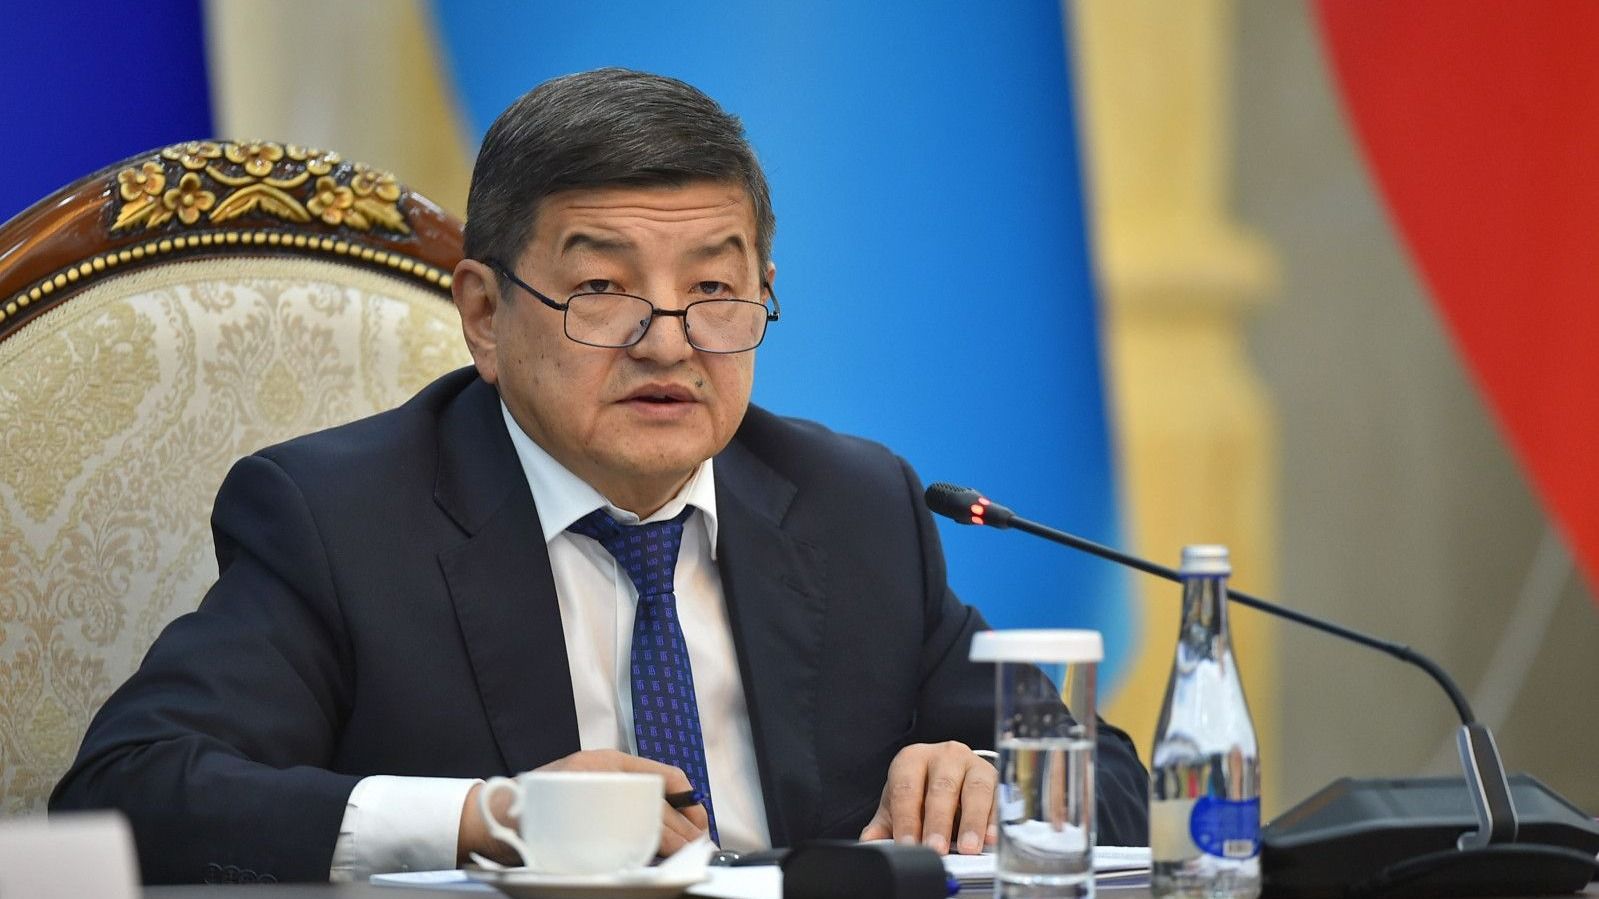 Кыргызстан и Таджикистан планируют решить вопросы по границе до нового года - Акылбек Жапаров